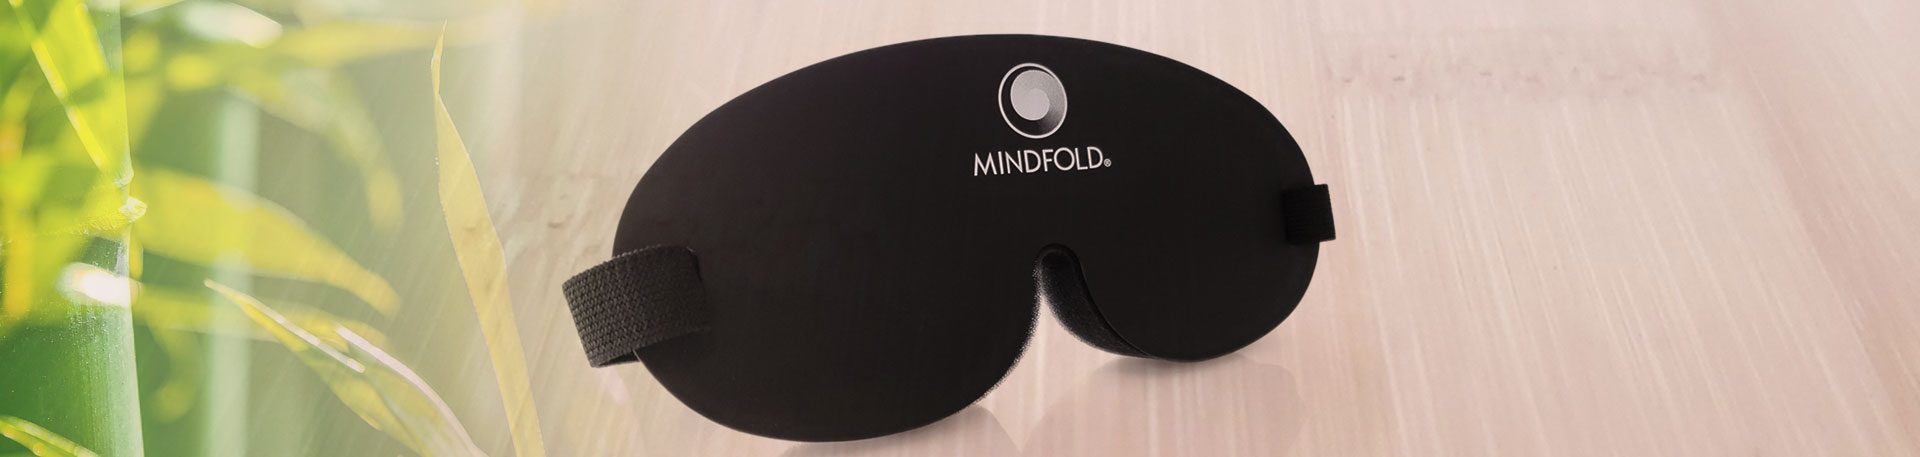 mindfold_header